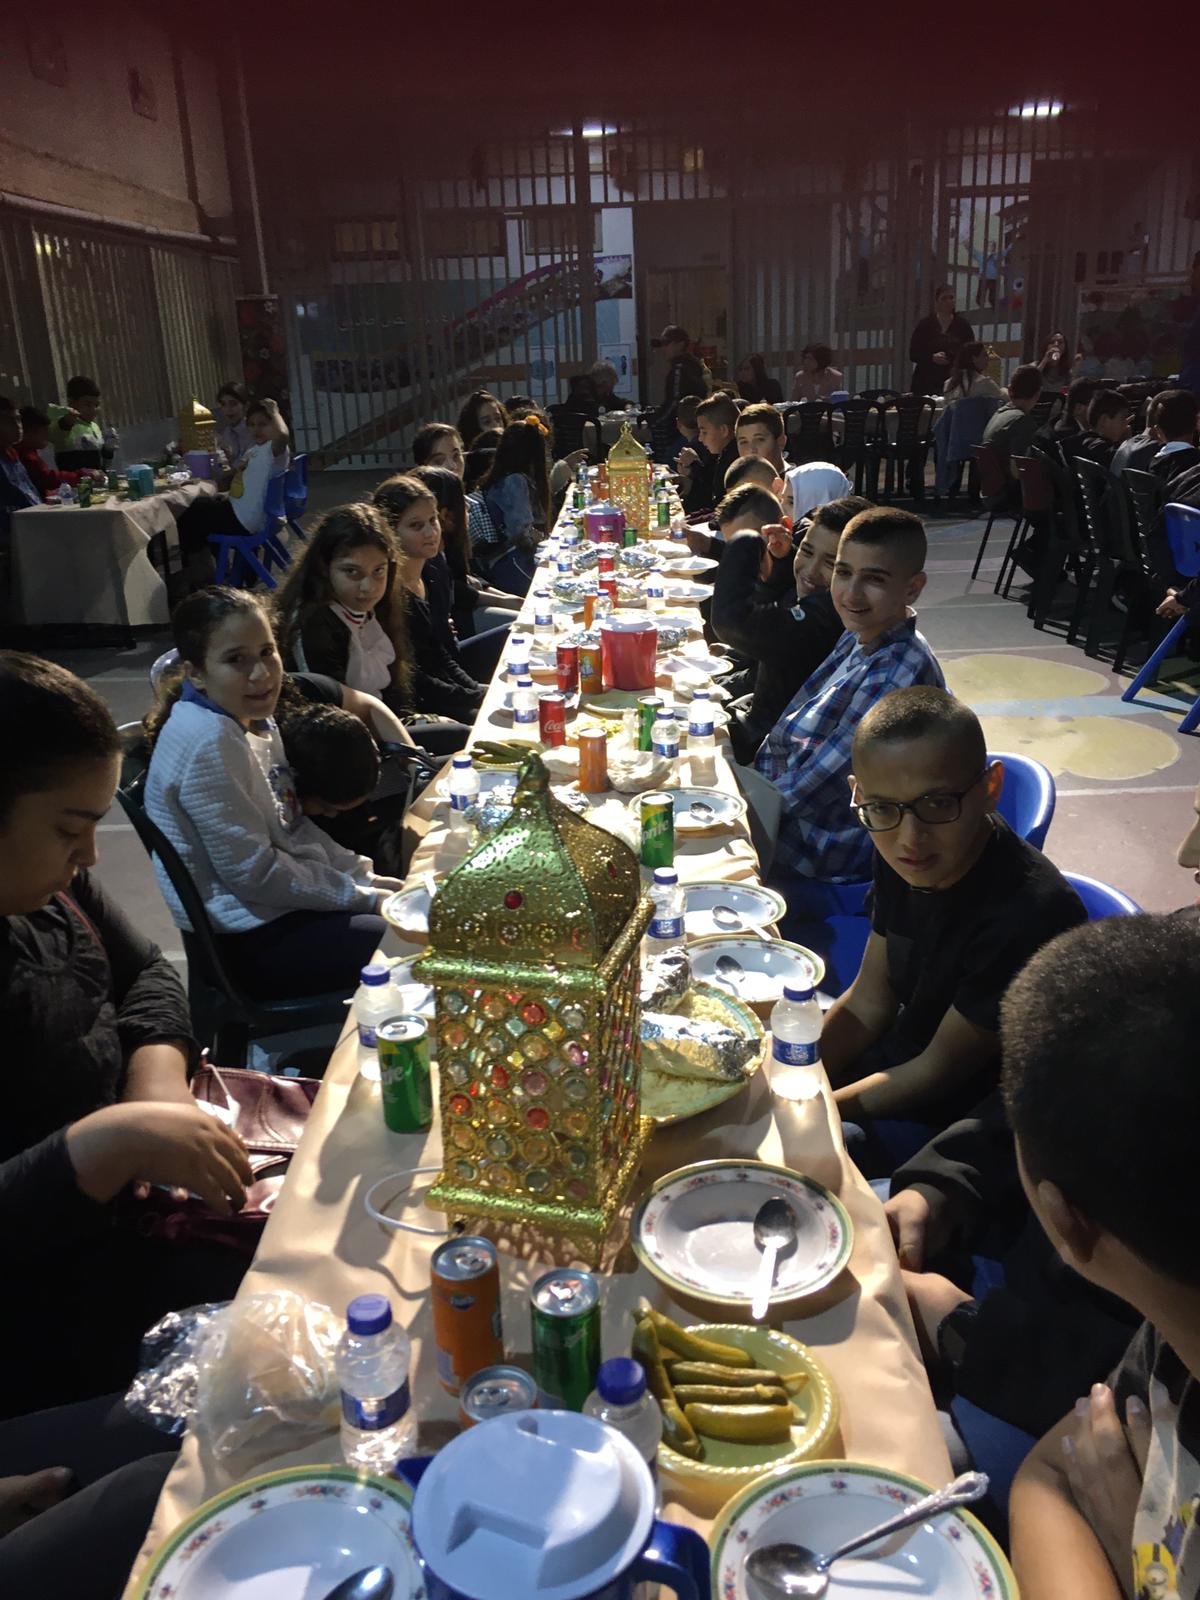 أمسية رمضانية تُعيد النكهة لطقوس وروحانيات الشهر الفضيل في المدرسة الجماهيريّة بئر الأمير-الناصرة-5